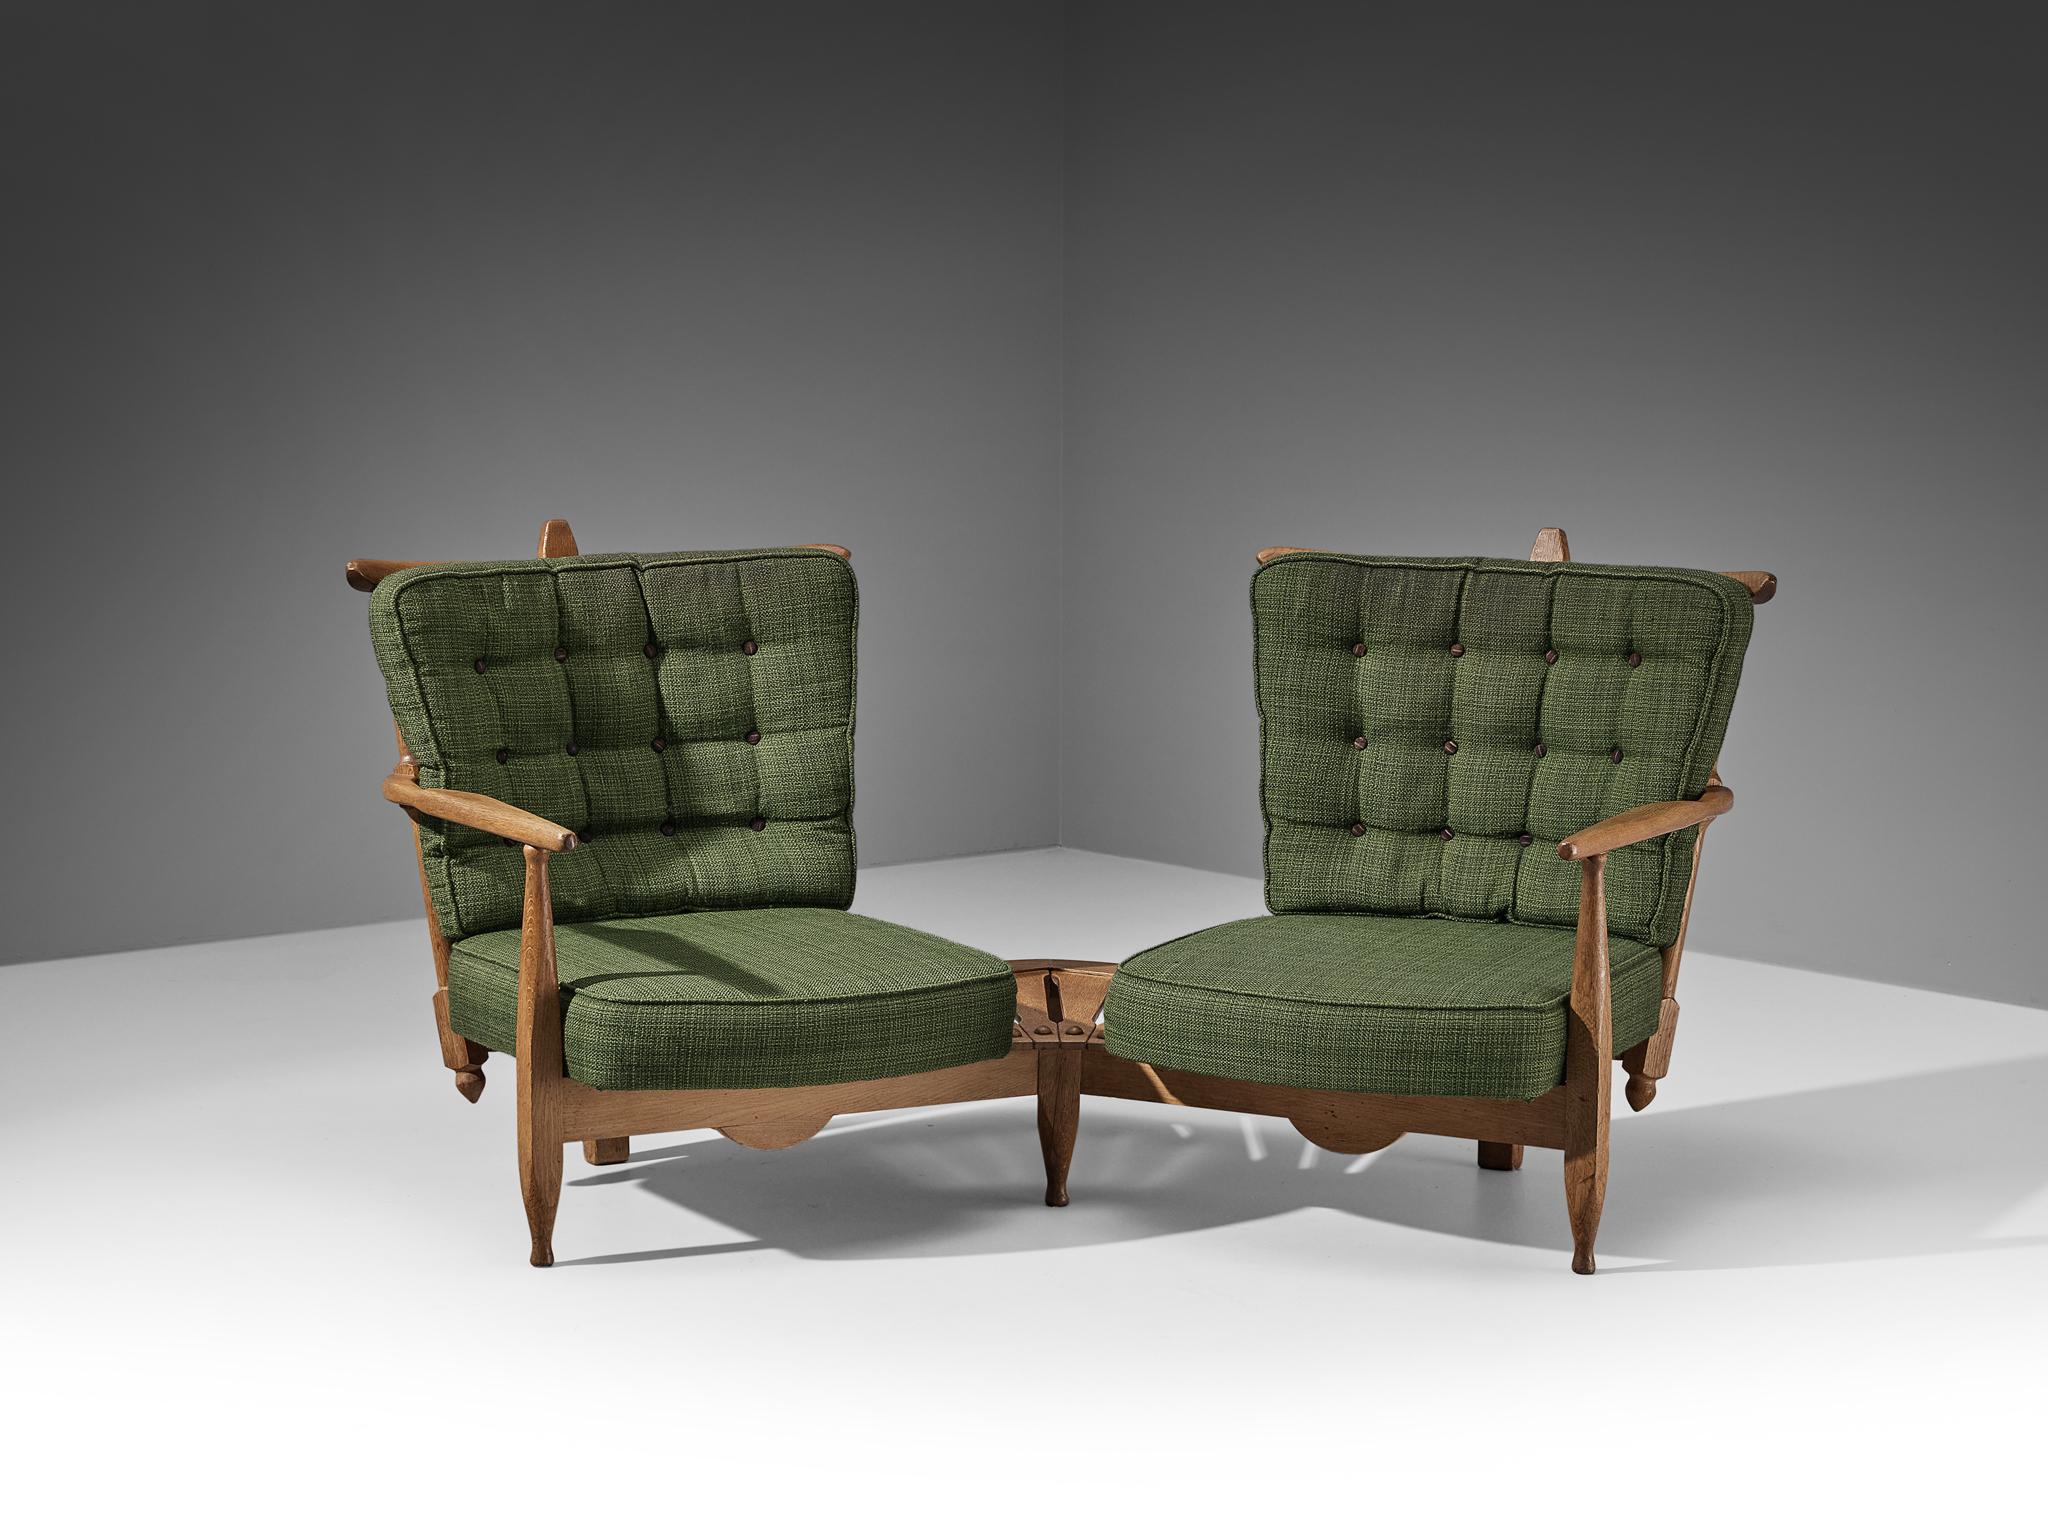 Guillerme et Chambron pour Votre Maison, chaises longues avec table d'appoint, chêne, tissu vert, France, années 1960 

Guillerme et Chambron sont connus pour leurs meubles en chêne massif de haute qualité, dont cette pièce est un autre excellent